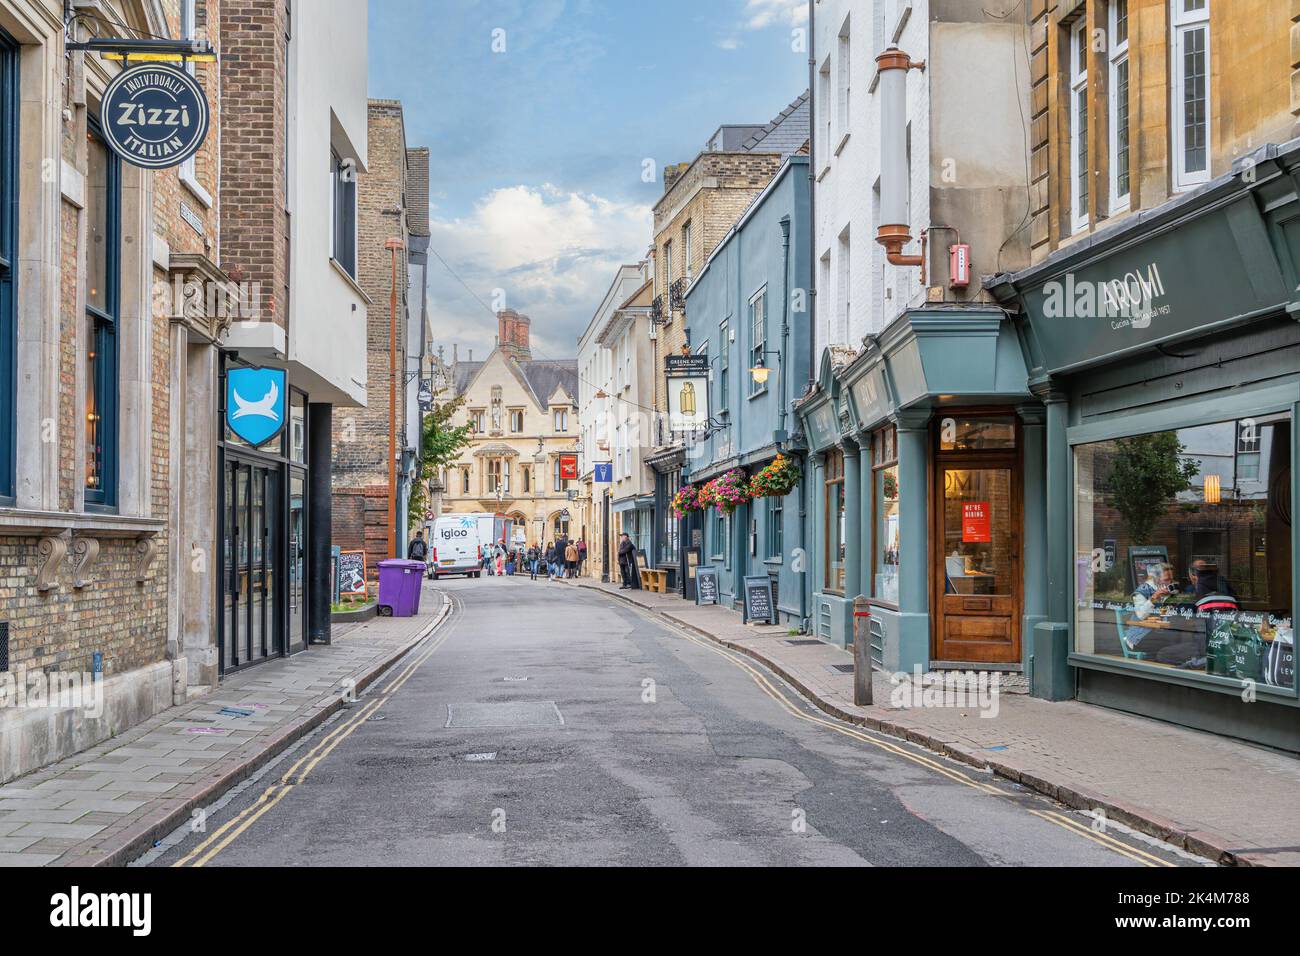 Escena callejera típica de Cambridge, Inglaterra Foto de stock